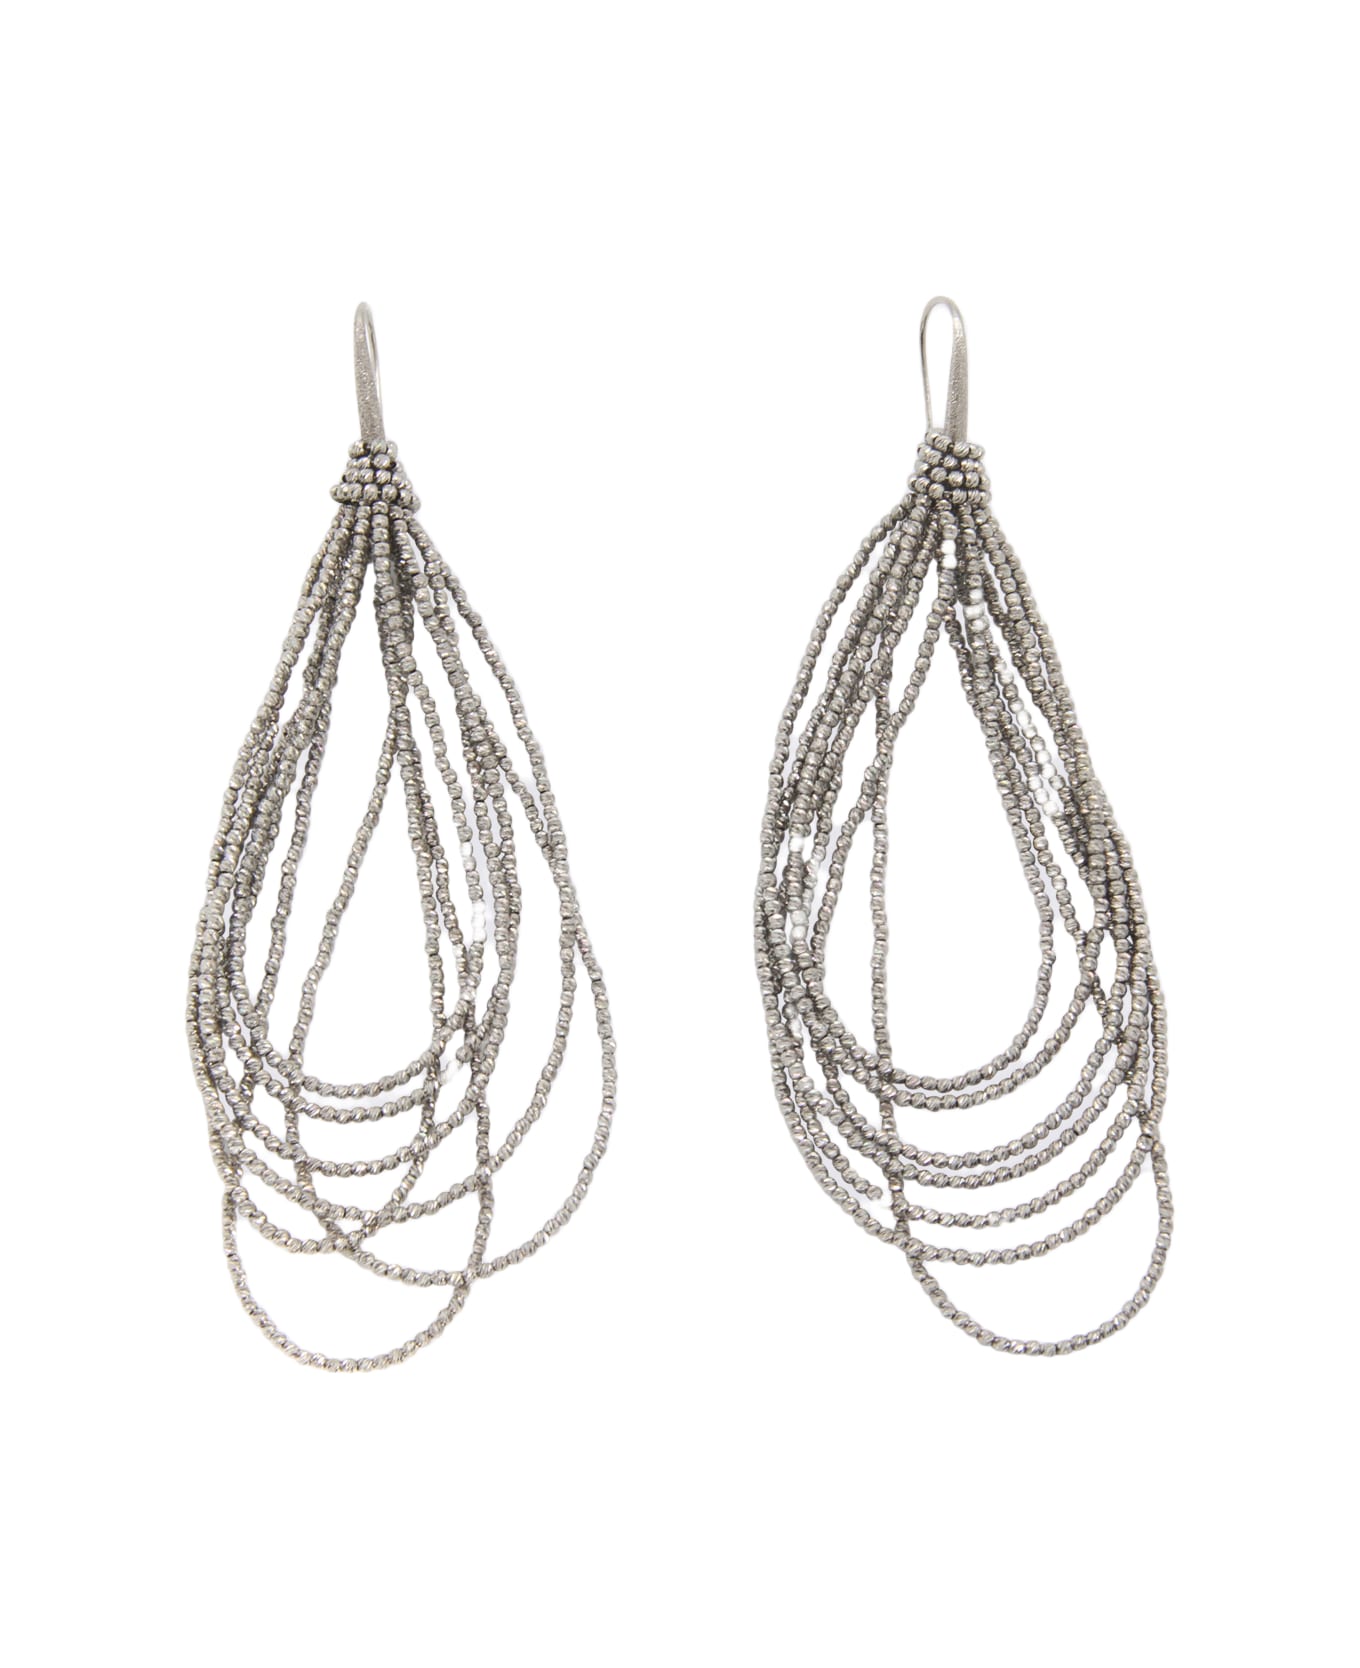 Brunello Cucinelli Silver-tone Brass Earrings - Silver イヤリング